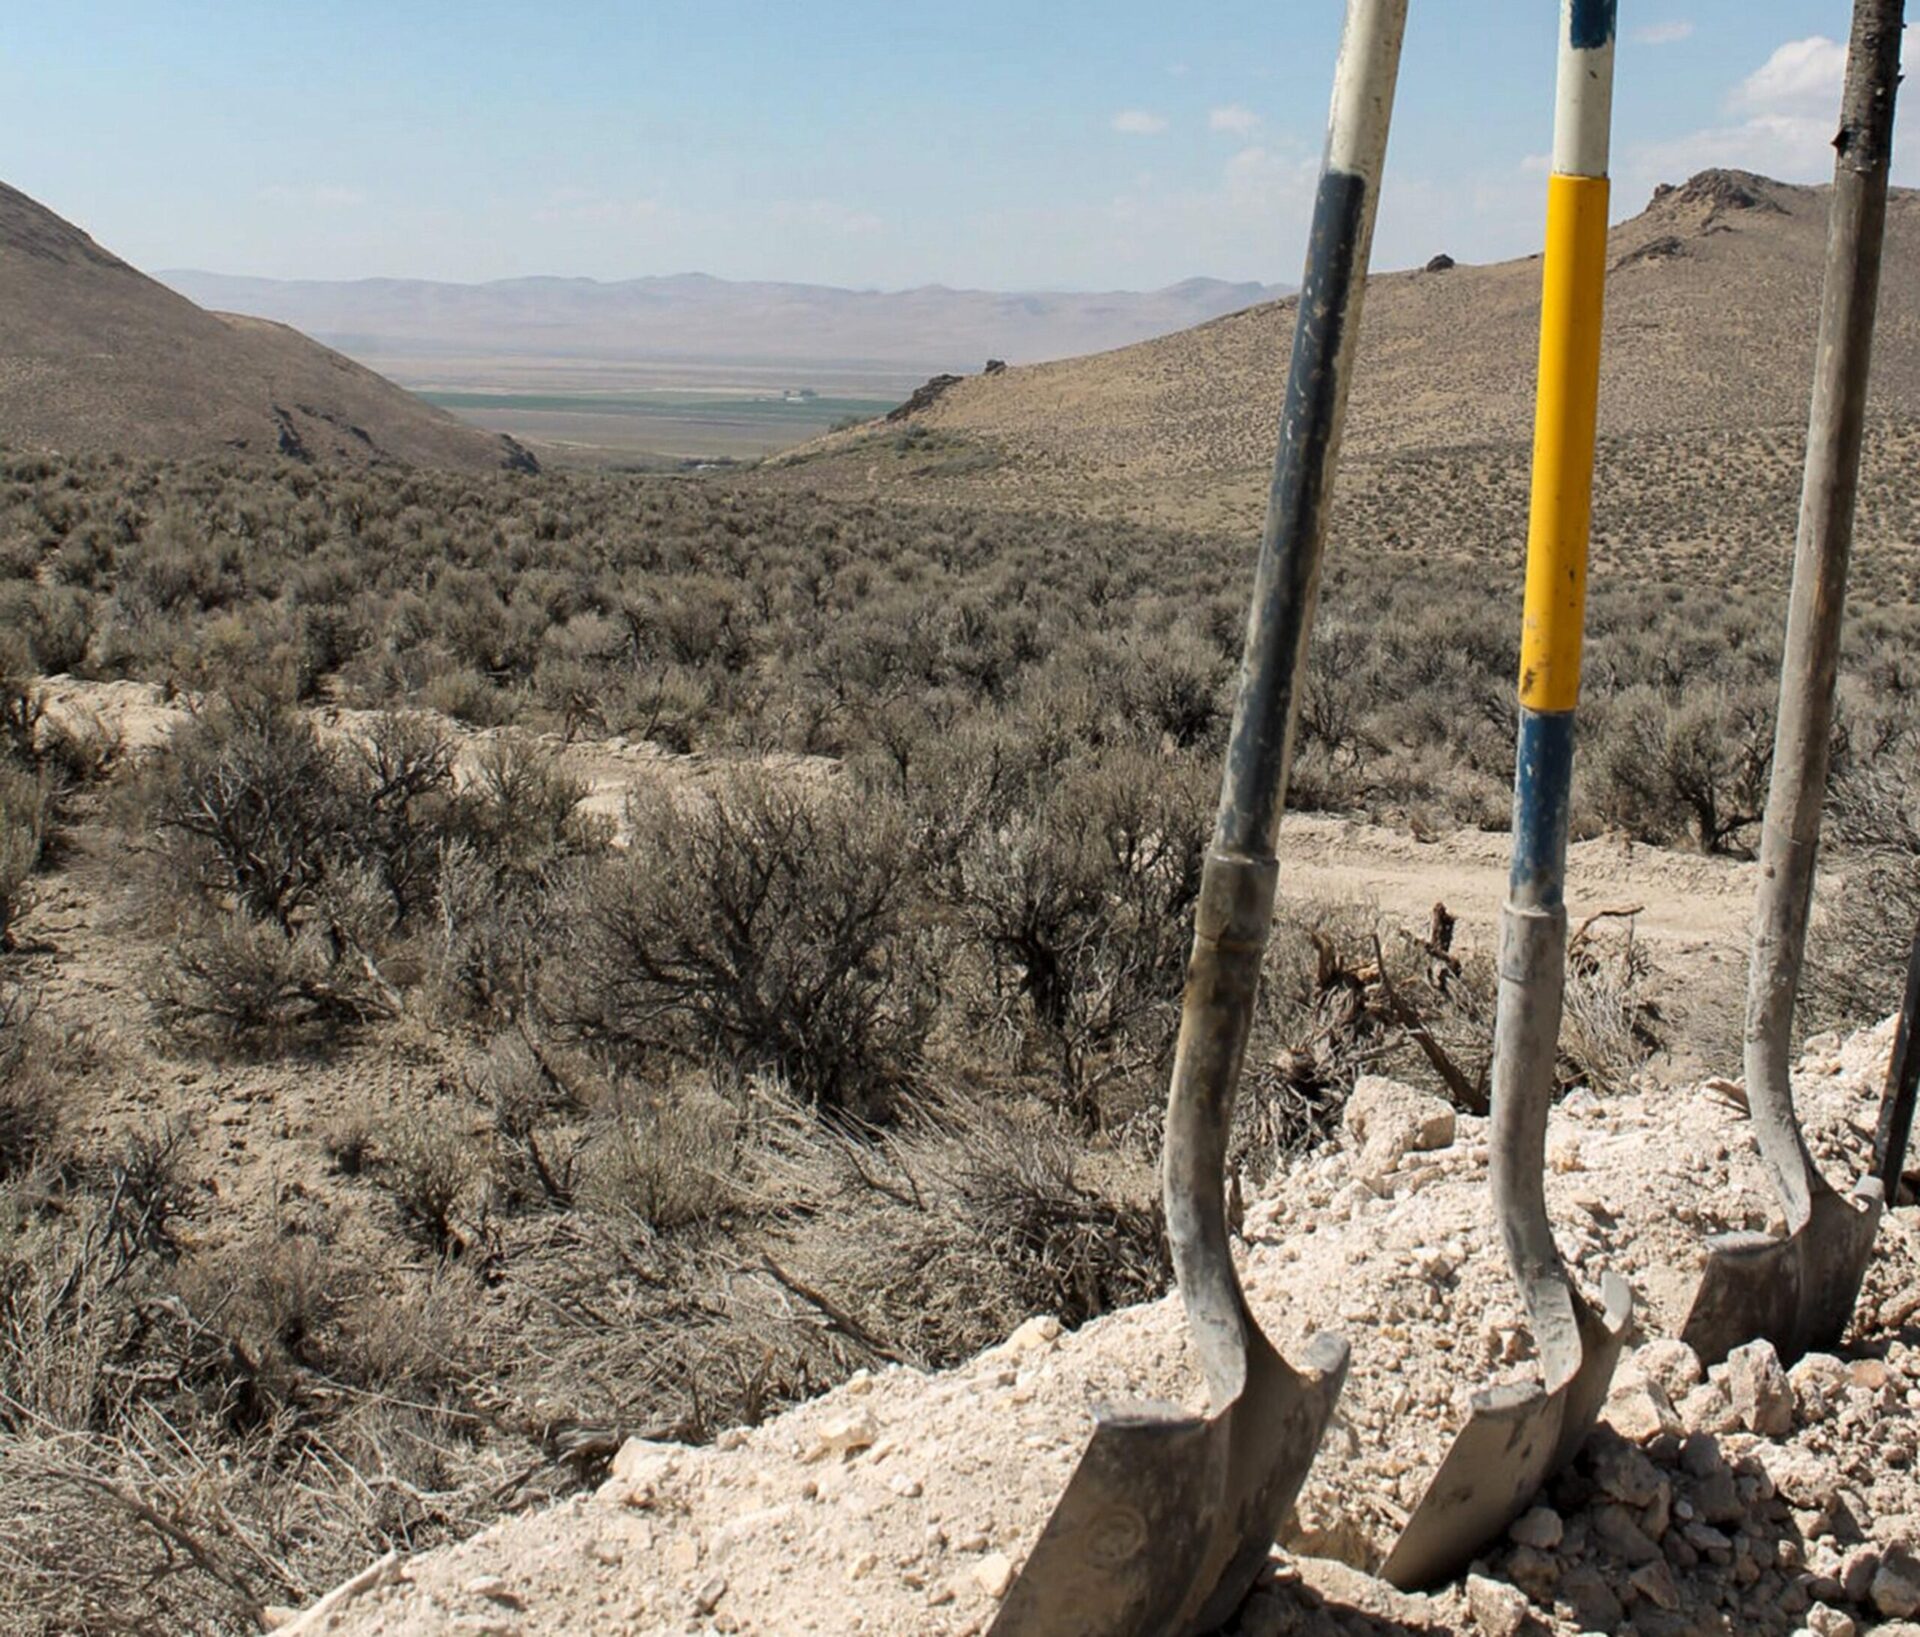 Juez de EE.UU. no bloqueará enorme mina de litio en línea Nevada-Oregón